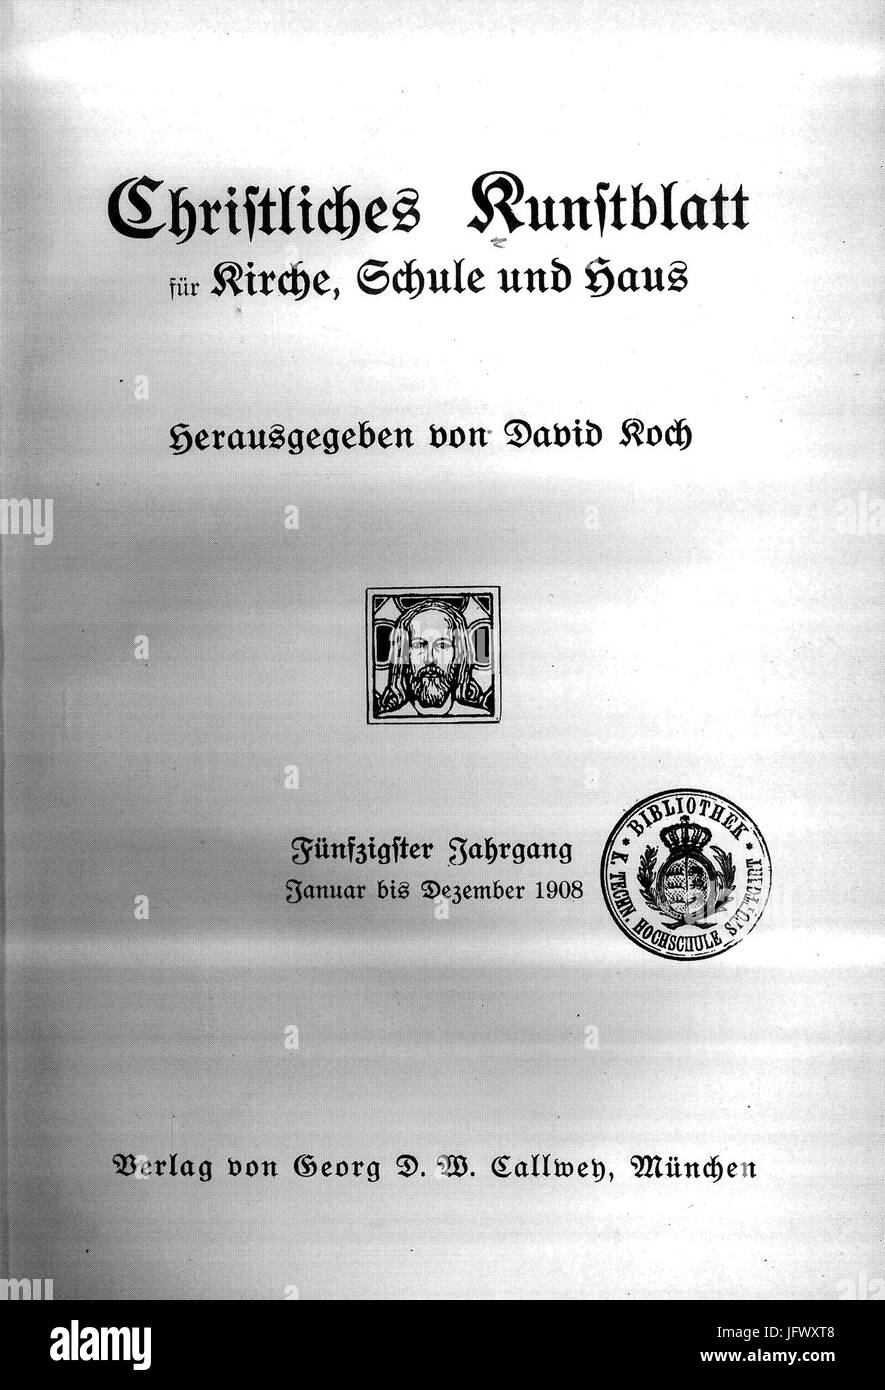 Christliches Kunstblatt für Kirche, Schule und Haus, Titelblatt, 1908 Stock Photo